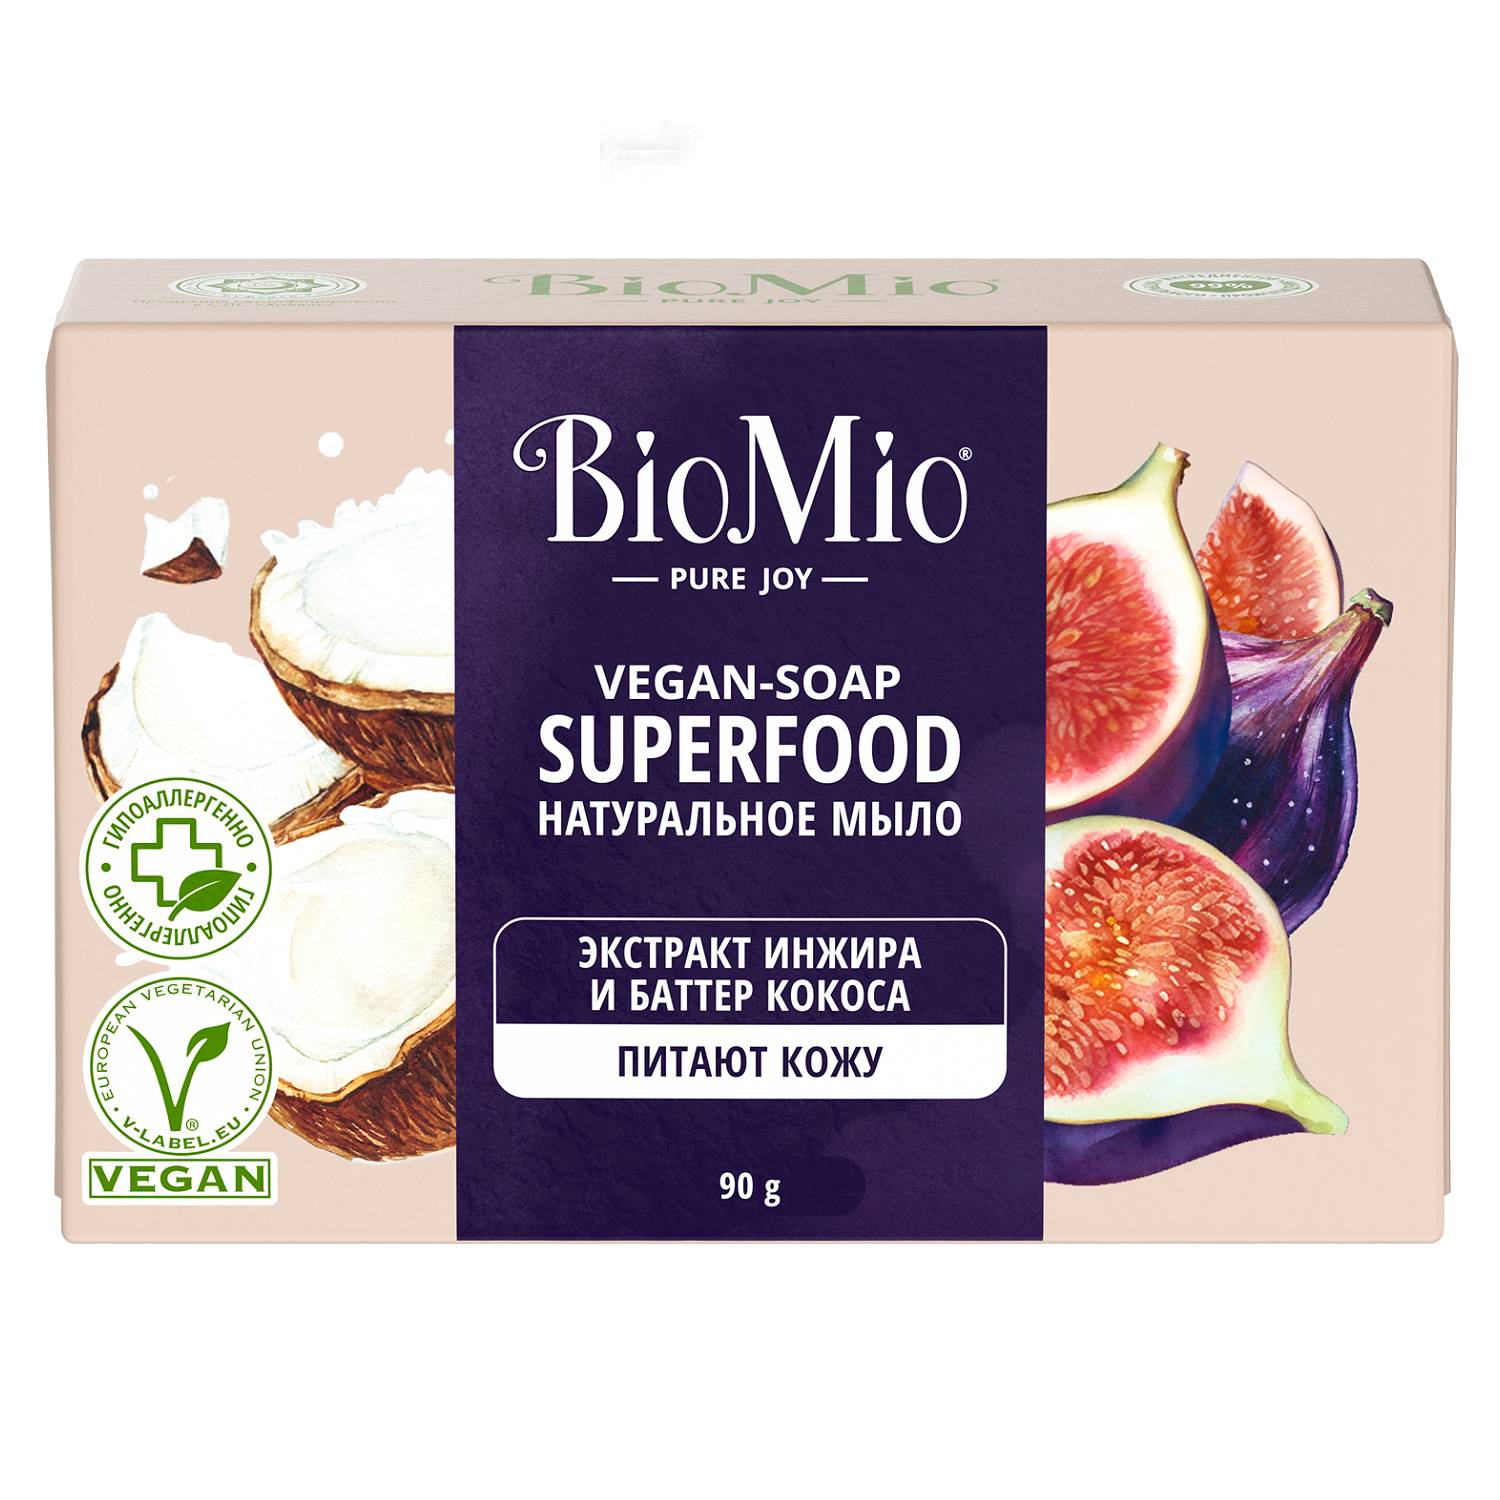 BioMio Натуральное мыло Инжир и кокос Vegan Soap Superfood, 90 г (BioMio, Мыло) веганское мыло для бритья розмарин 80 г bambow bambaw